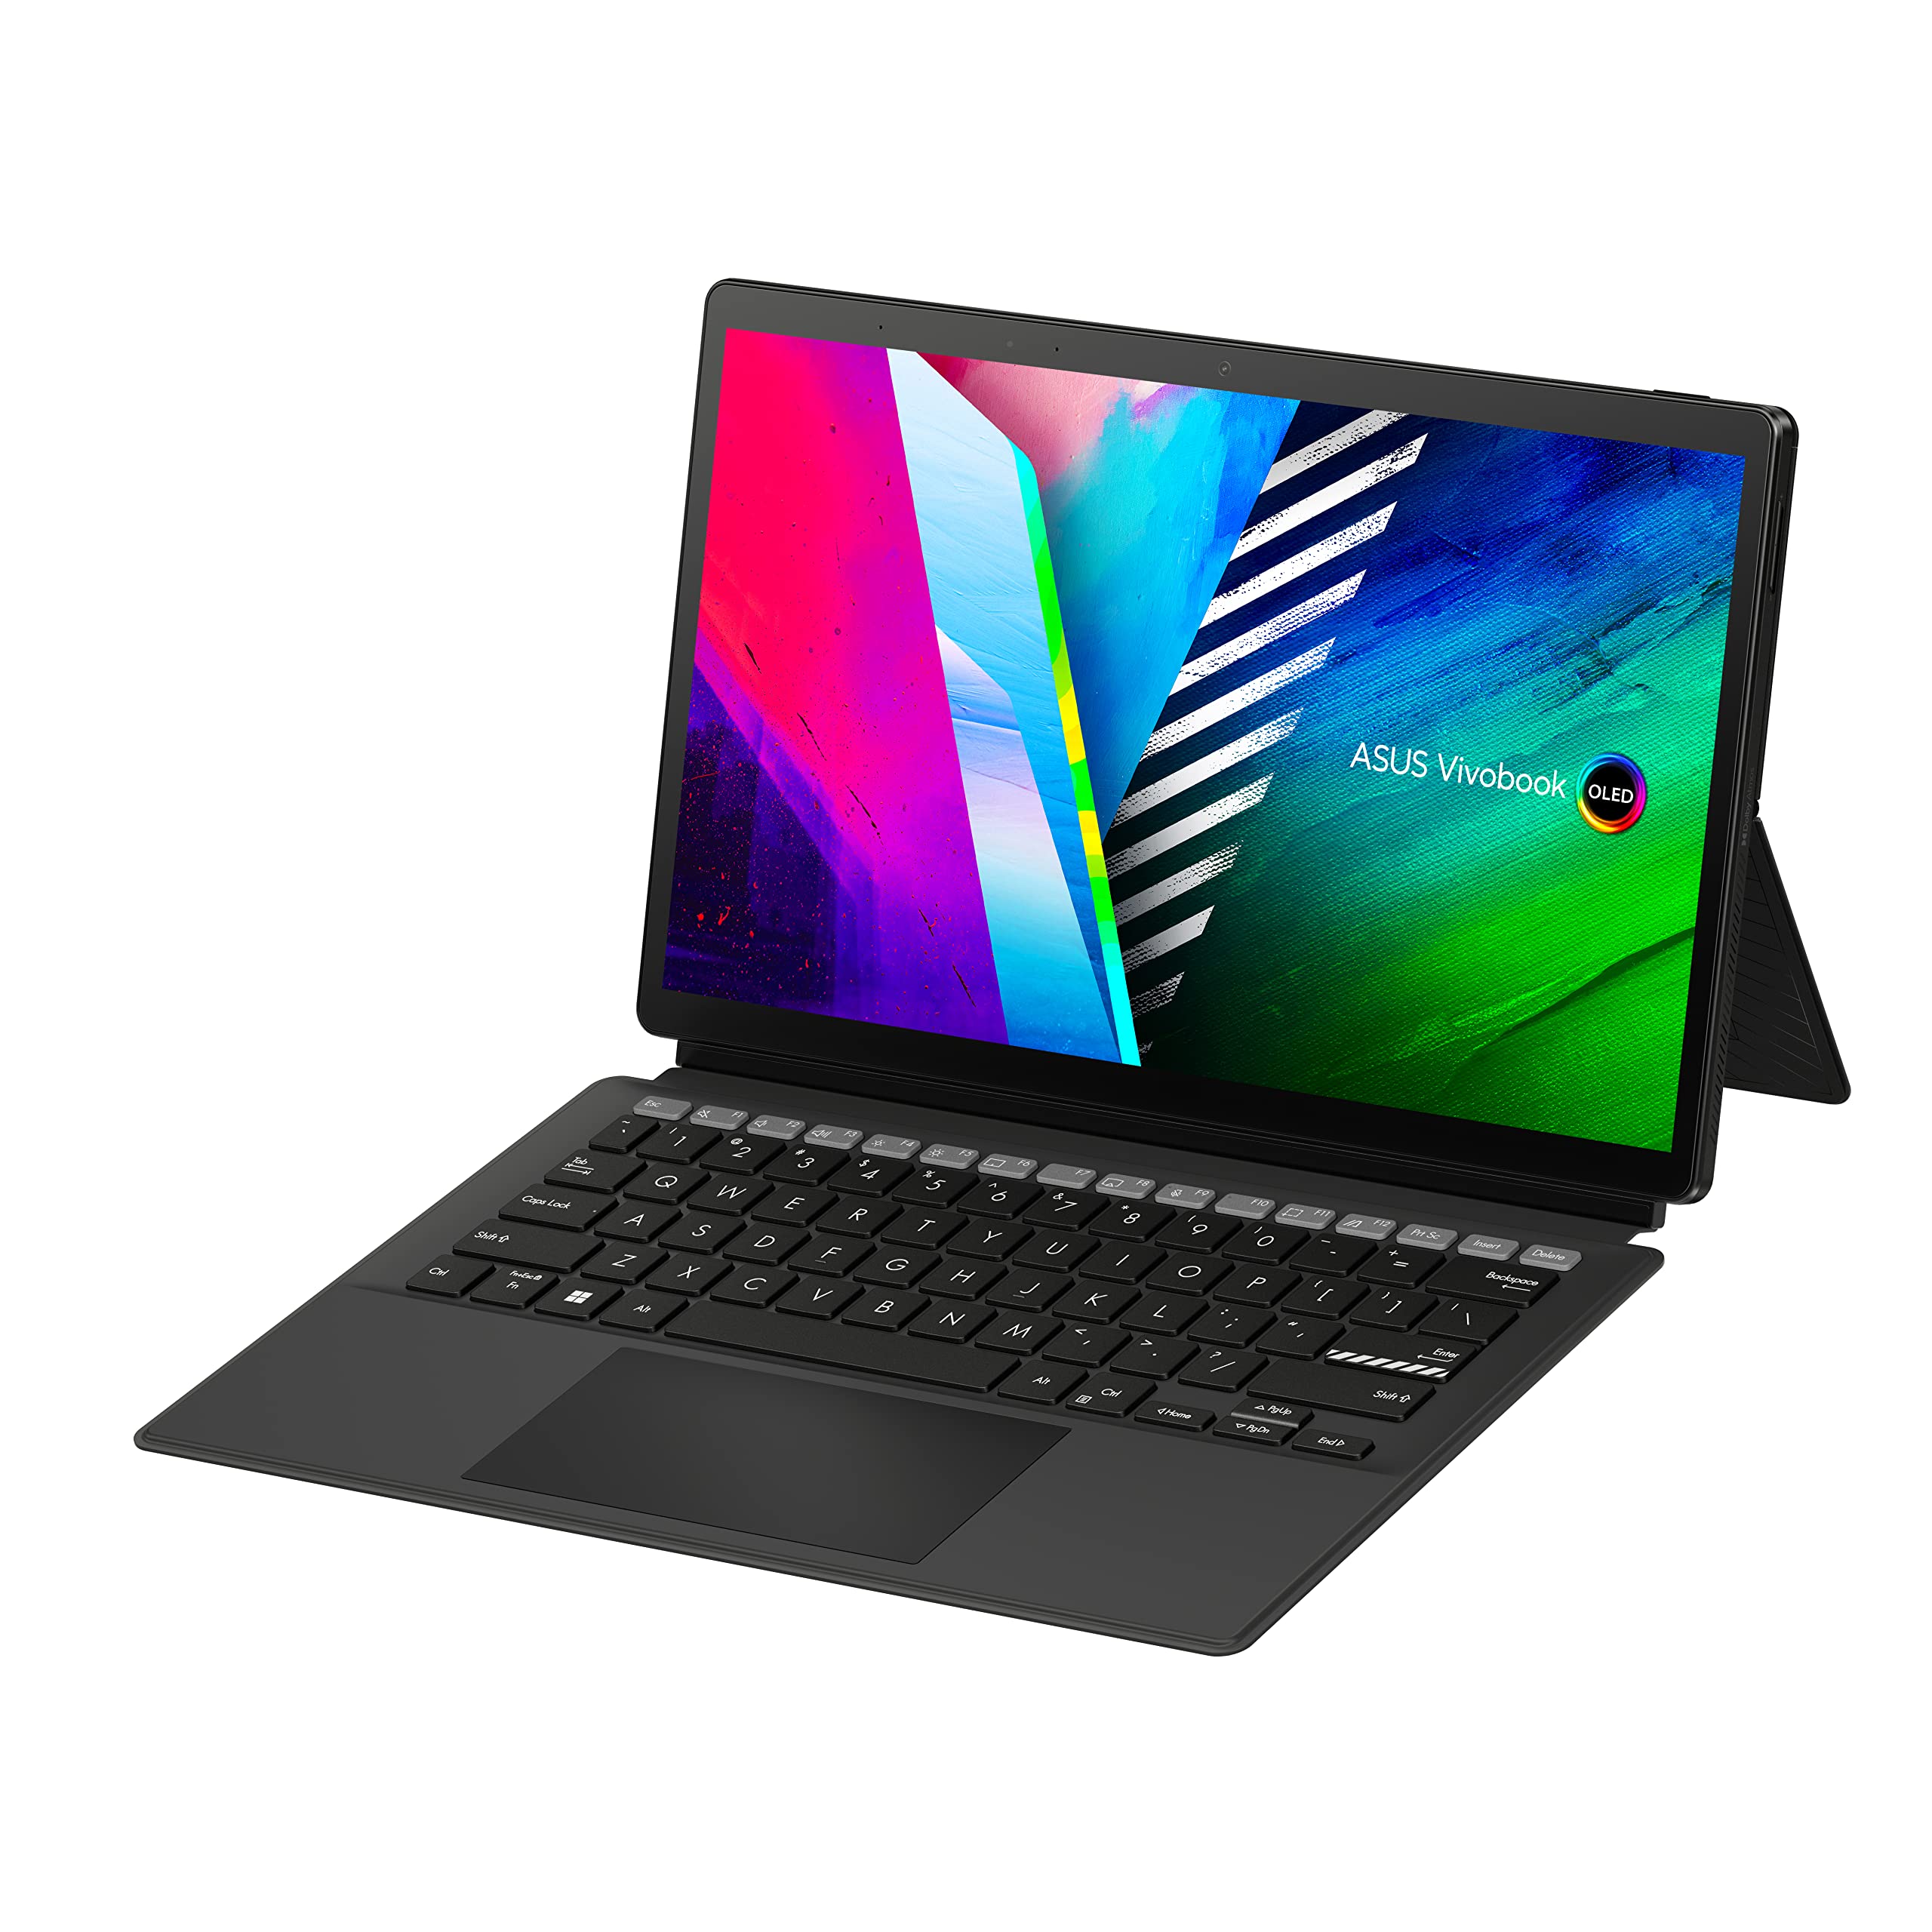 Asus Vivobook 13 Slate OLED: Laptop 2-in-1 dengan Performa Tangguh dan Harga Terjangkau!